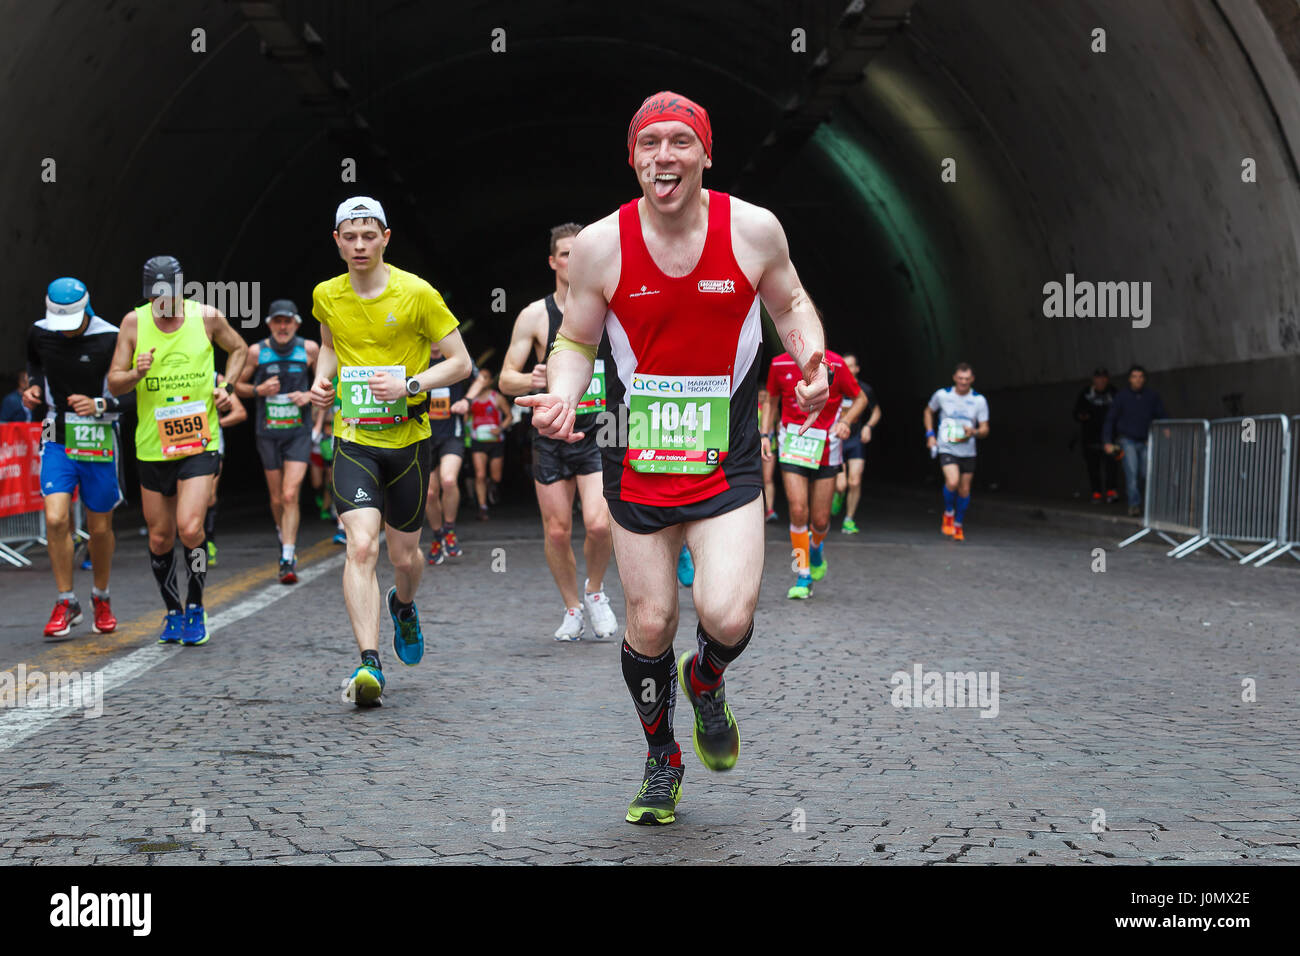 Roma, Italia - 2 Aprile, 2017: atleti del XXIII Maratona di Roma per il passaggio della Galleria Umberto I, a pochi chilometri dal traguardo. Foto Stock